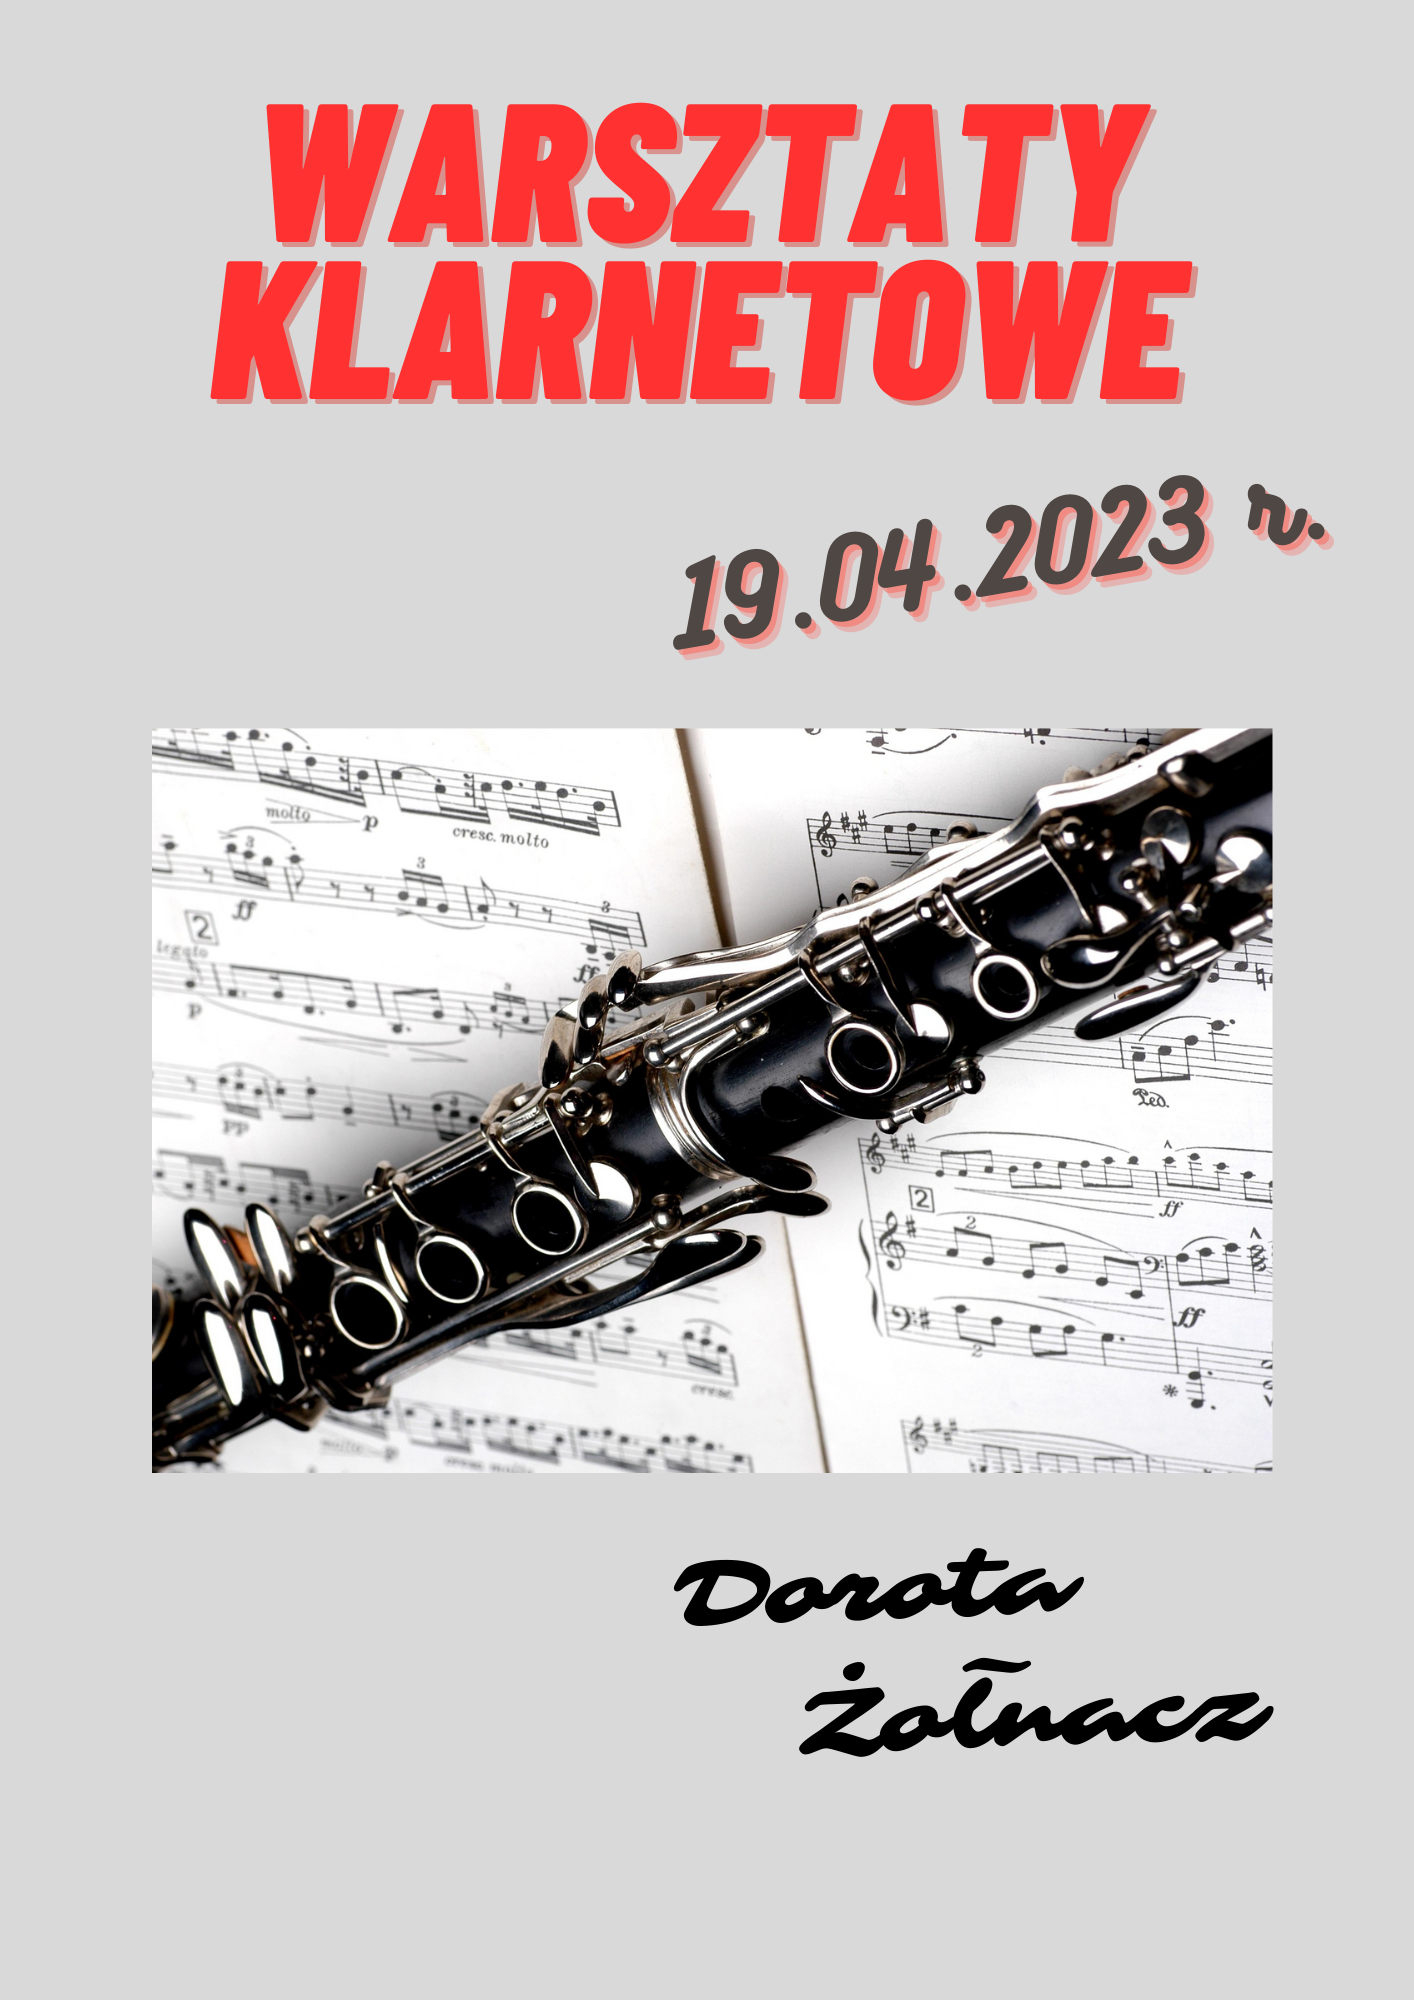 Warsztaty klarnetowe 19.04.2023 r. prowadząca Dorota Żołnacz